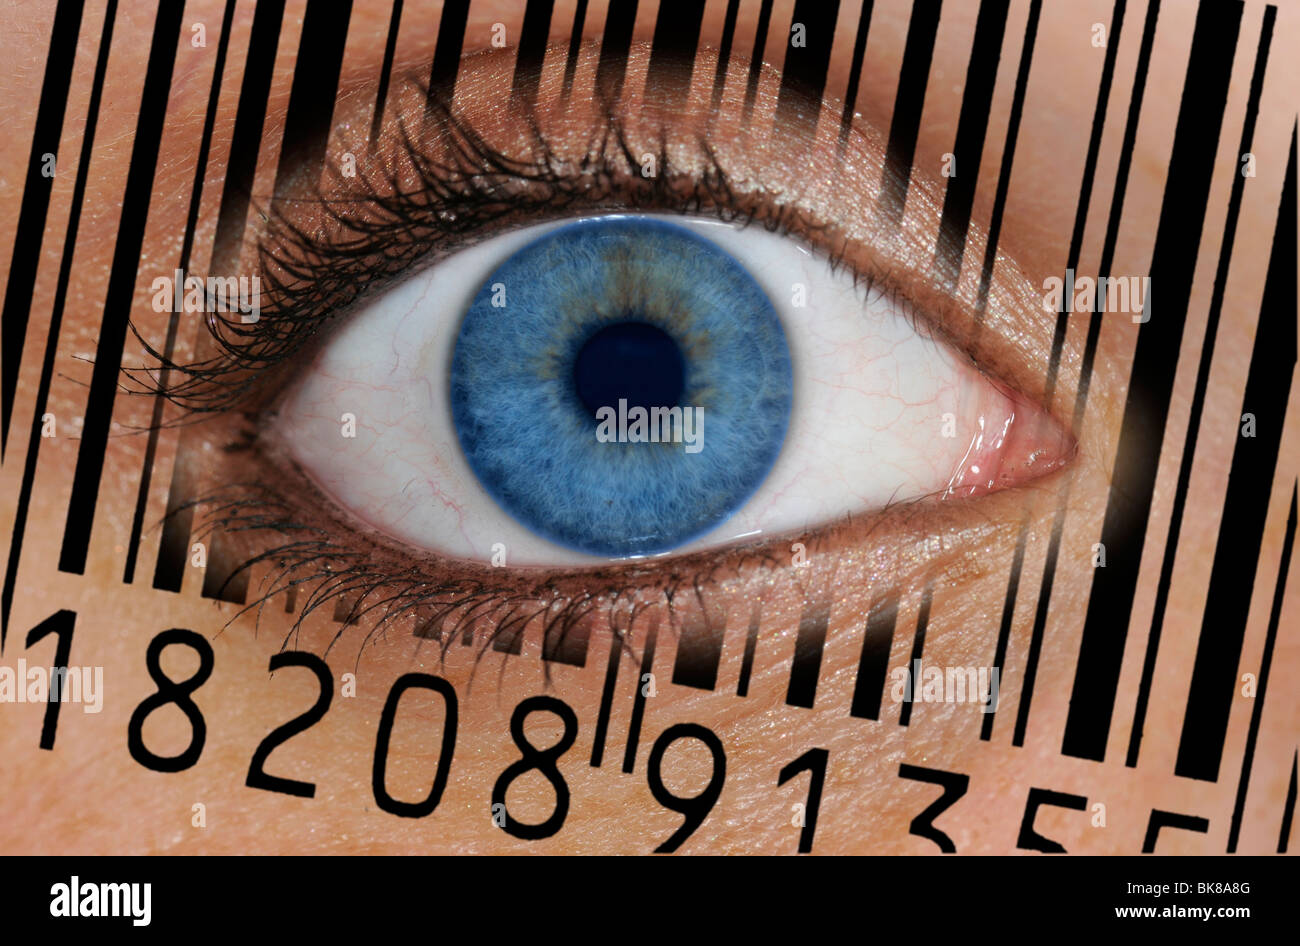 Nahaufnahme eines Auges mit dem EAN-Barcode, europäische Artikelnummer auf der Iris, symbolisches Bild für transparente client Stockfoto